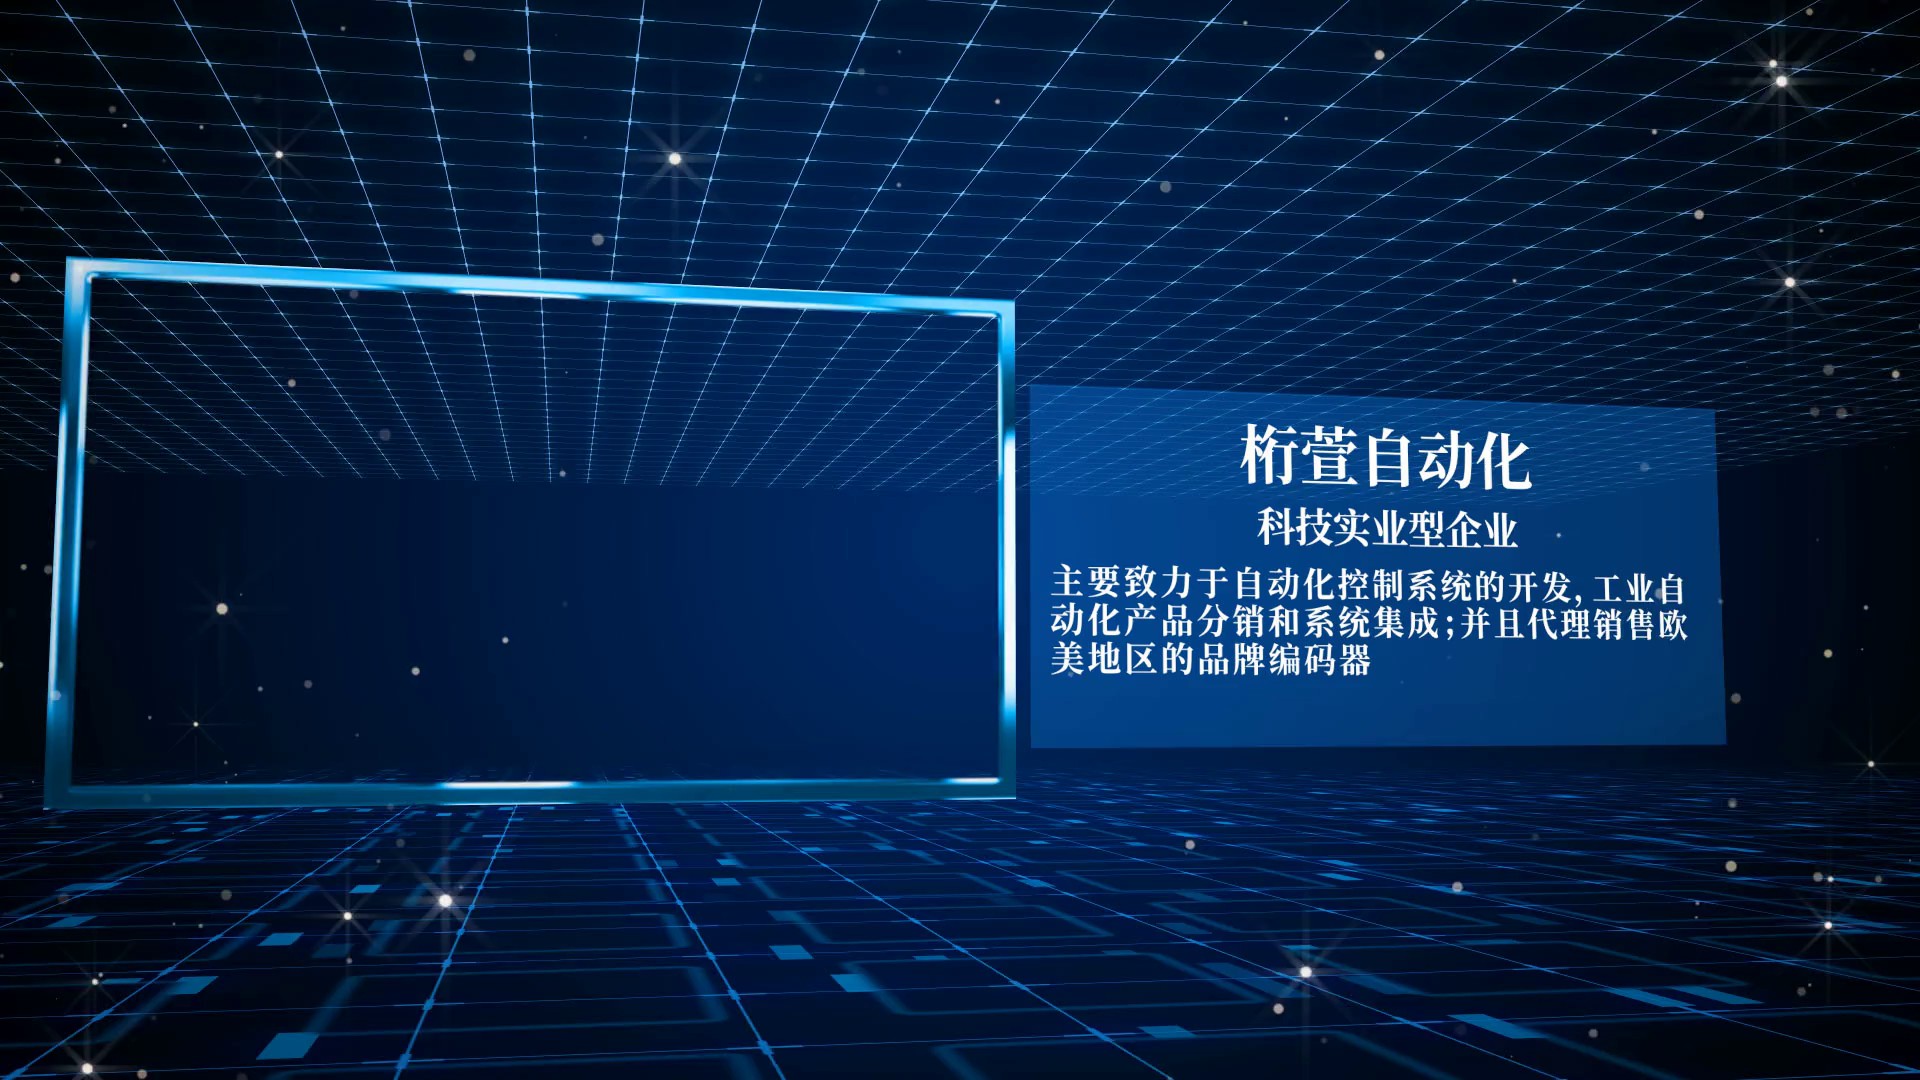 上海14位分辨率以太网接口编码器生产商,多圈PN绝对值编码器